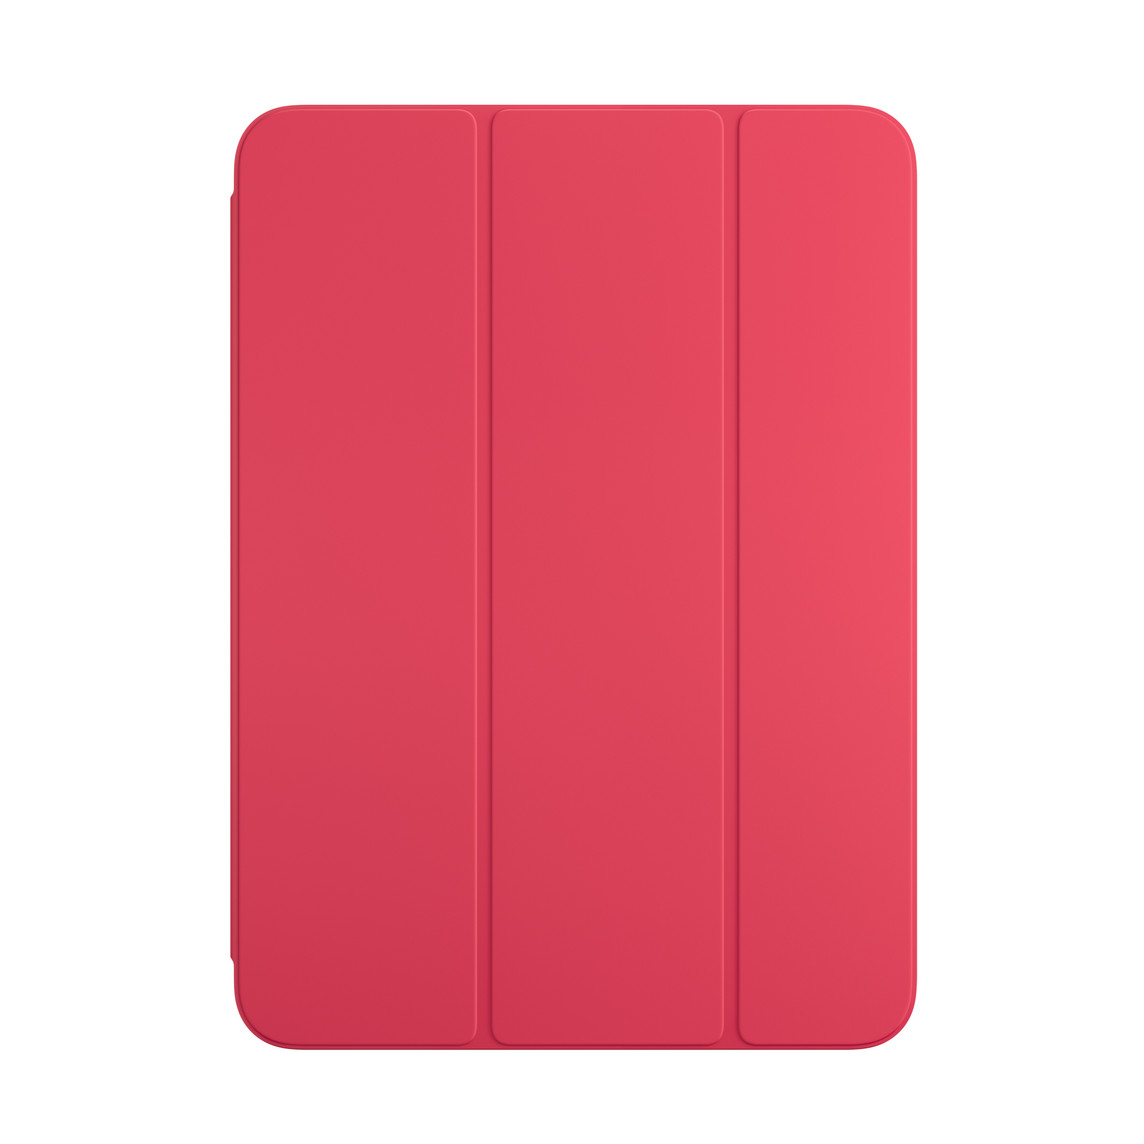 Vooraanzicht van watermeloen Smart Folio voor iPad